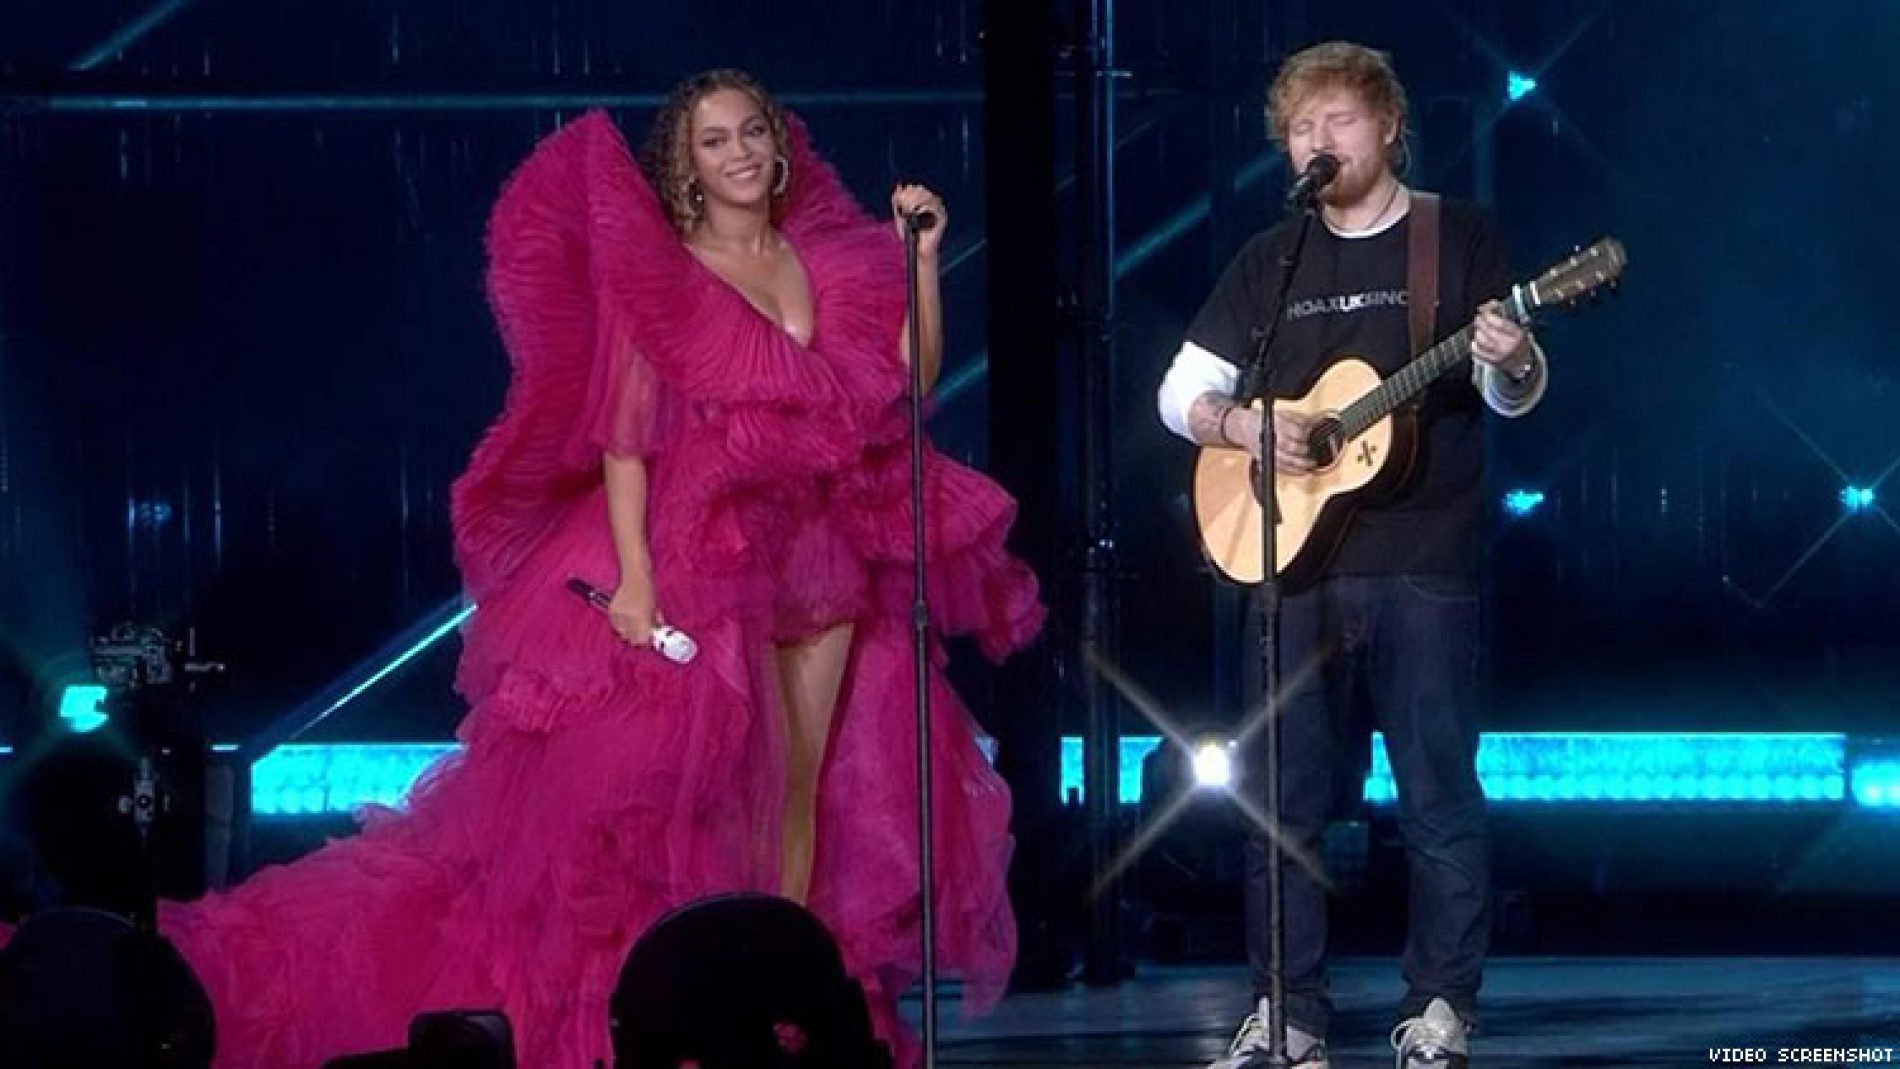 Beyoncé & Ed Sheeran’s Stage Outfits Ignite Gender Standards Debate